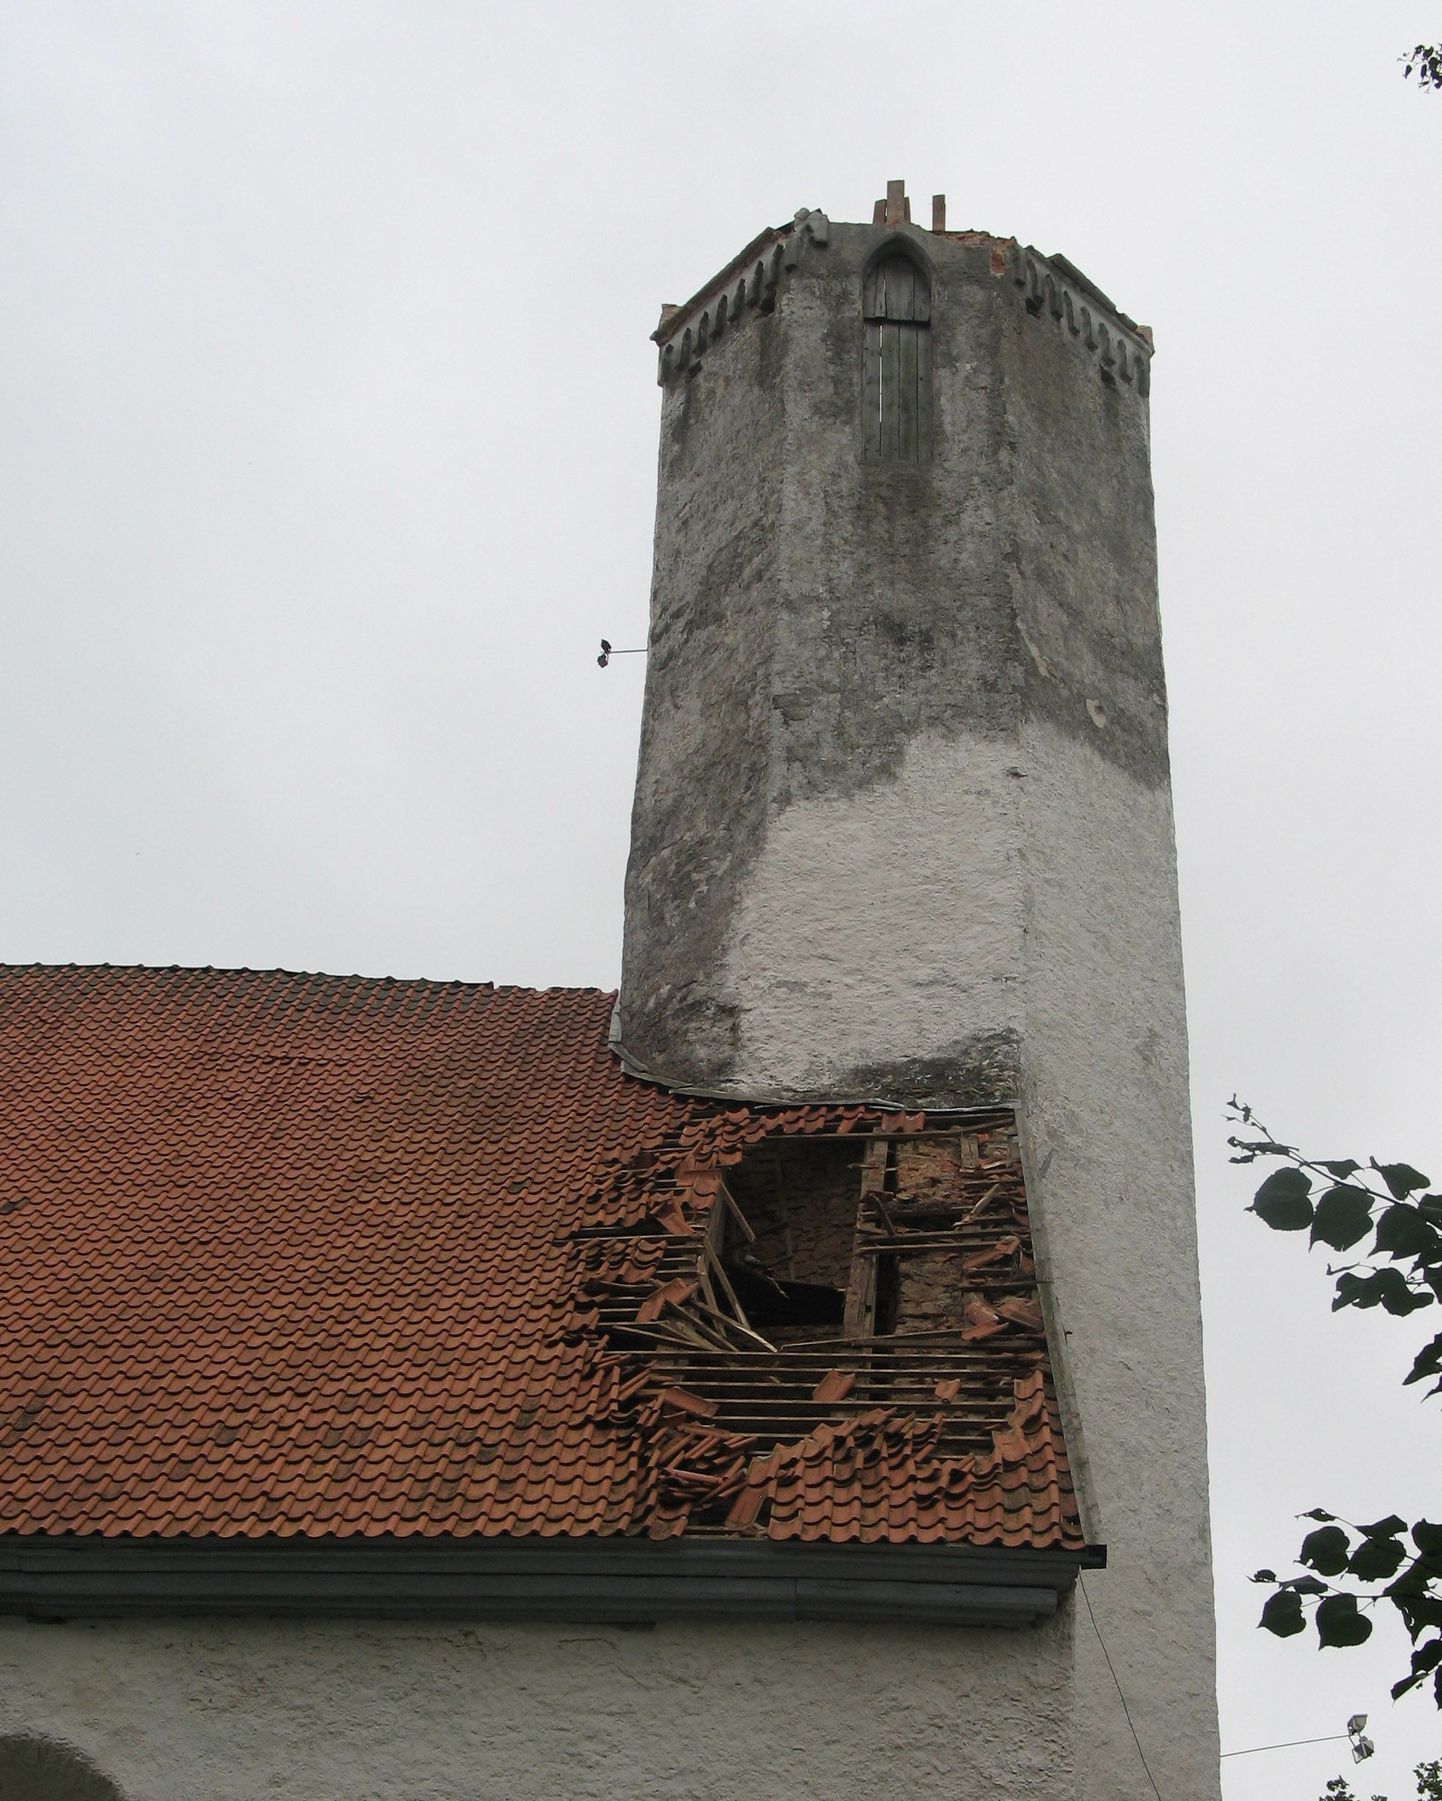 Torm rebis Väike-Maarja kirikult tornikiivri ja heitis selle kõrval olevale kabelile